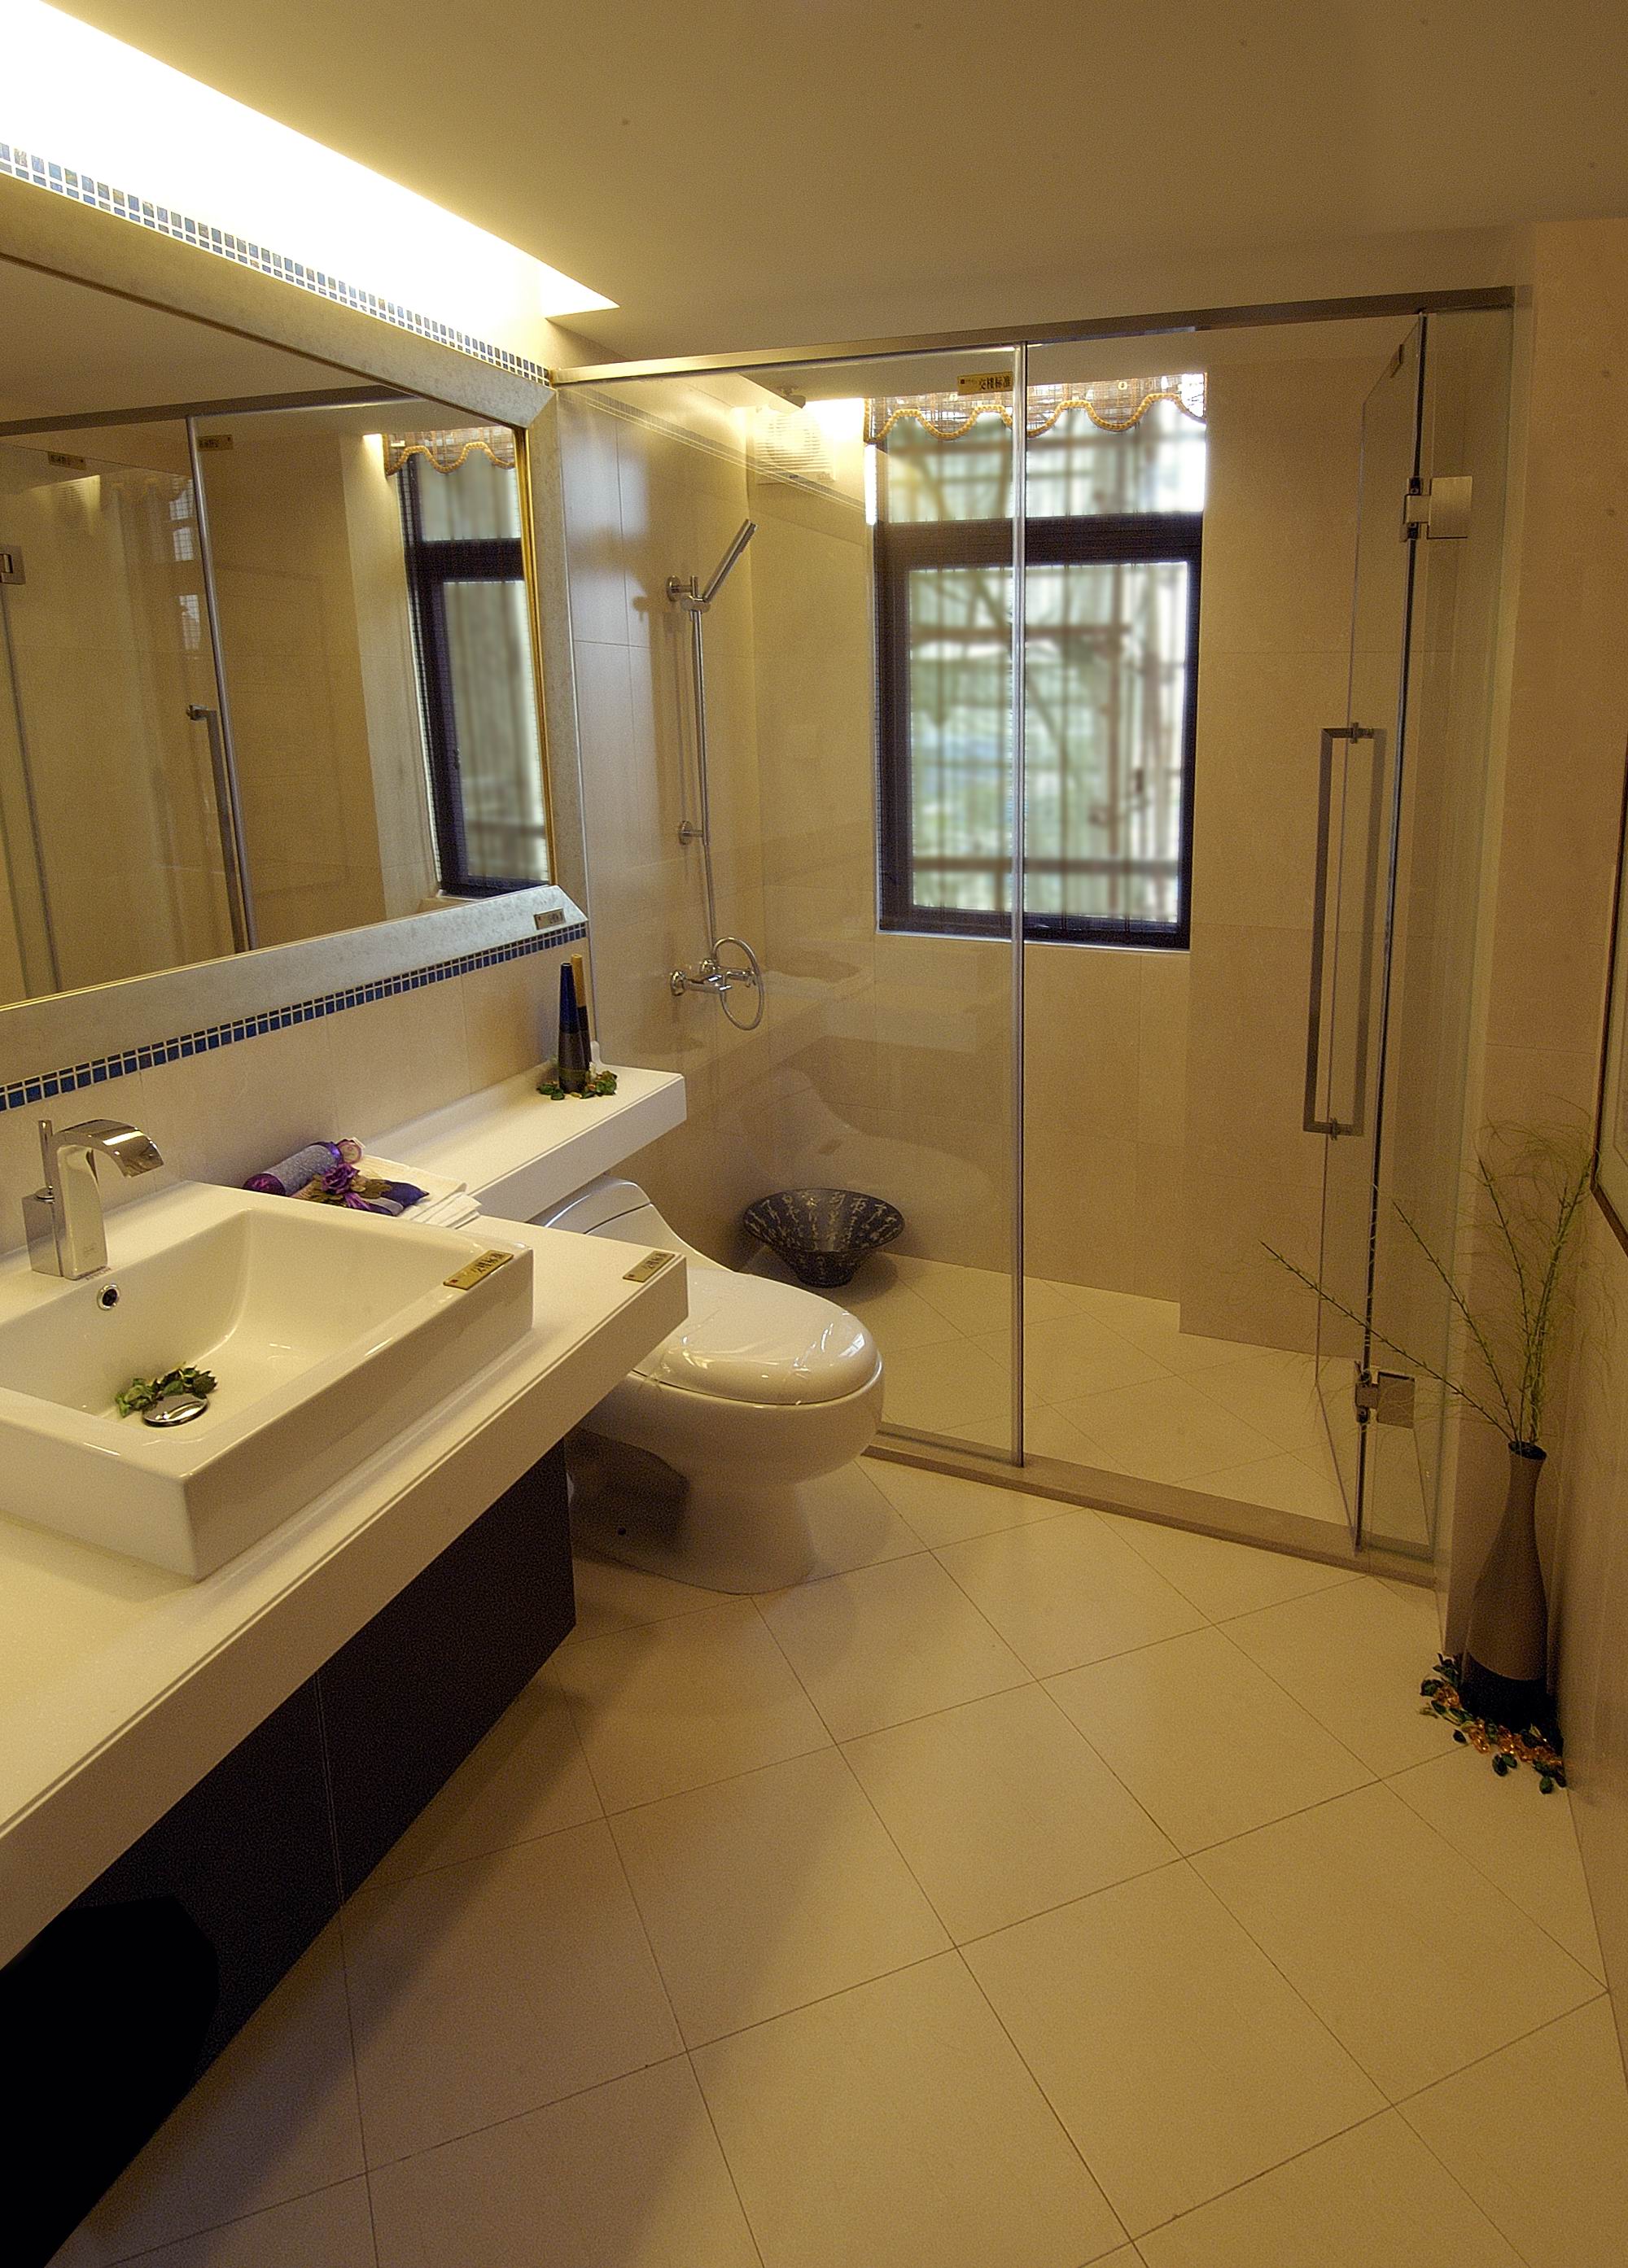 公寓 中式 卫生间图片来自紫禁尚品国际装饰小孔在中式风格泛海国际案例的分享